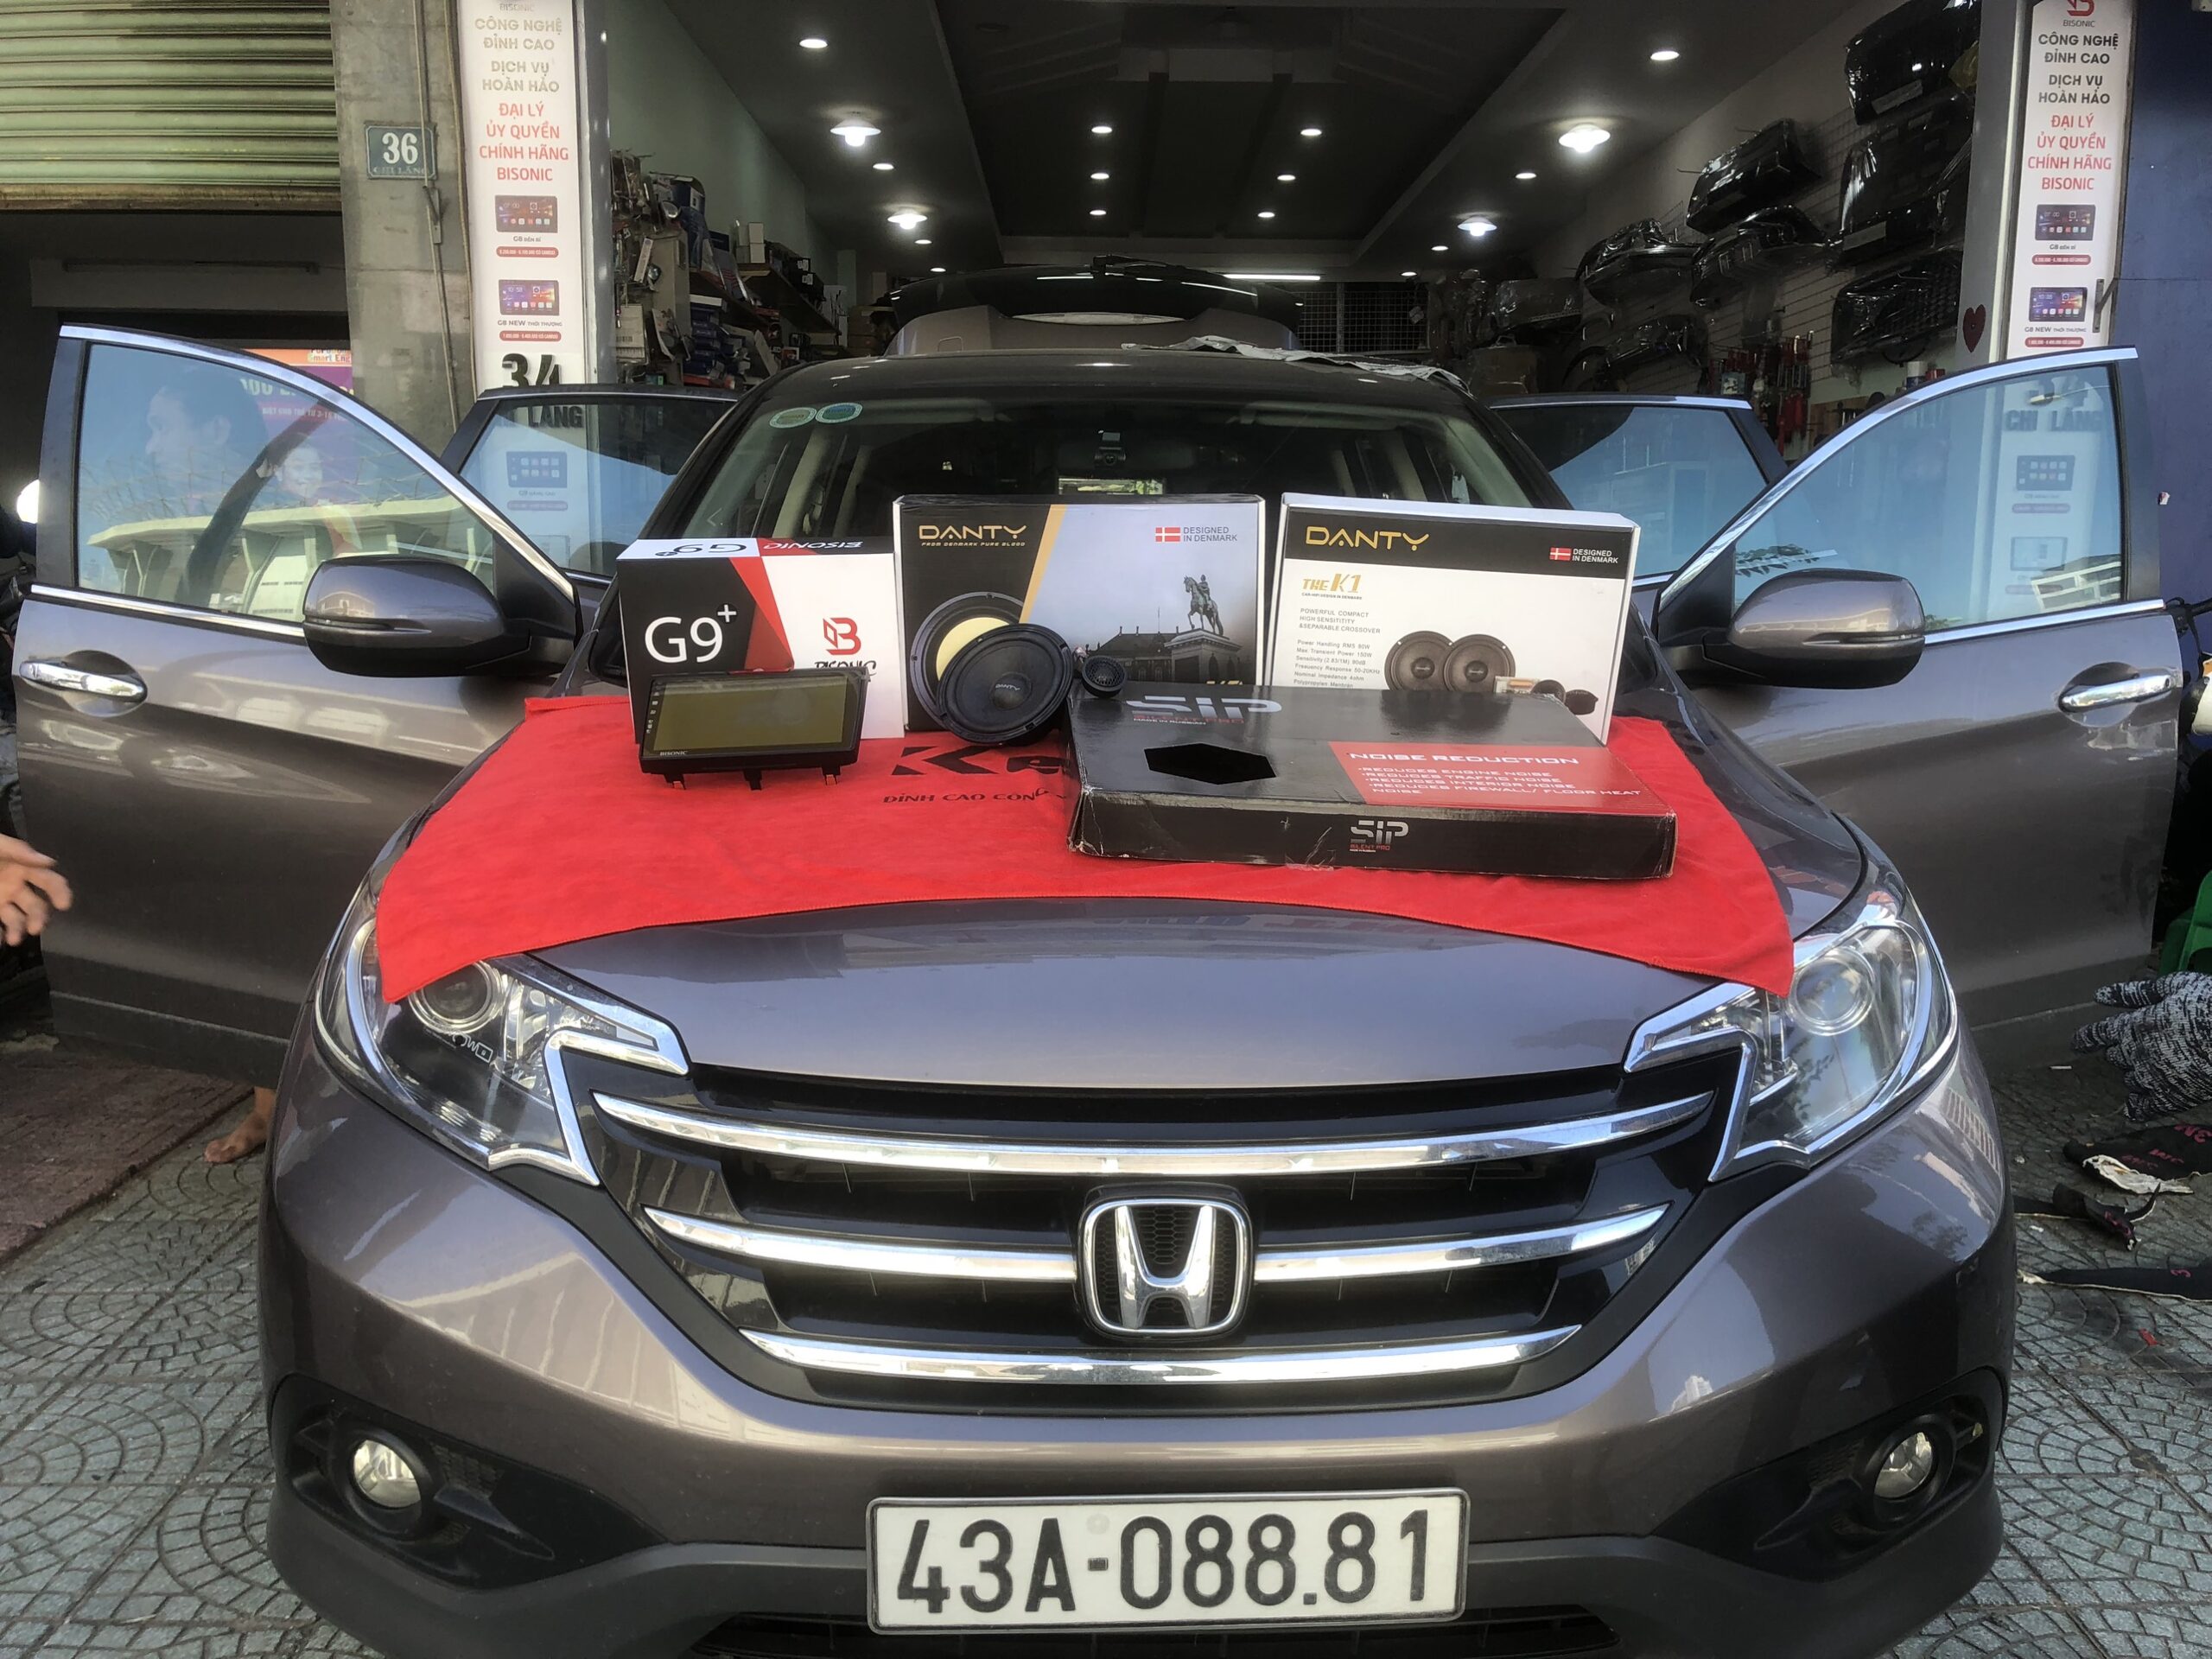 Thu Hiền AUTO– Đại lý bán hàng vật liệu cách âm SIP tại Đà Nẵng